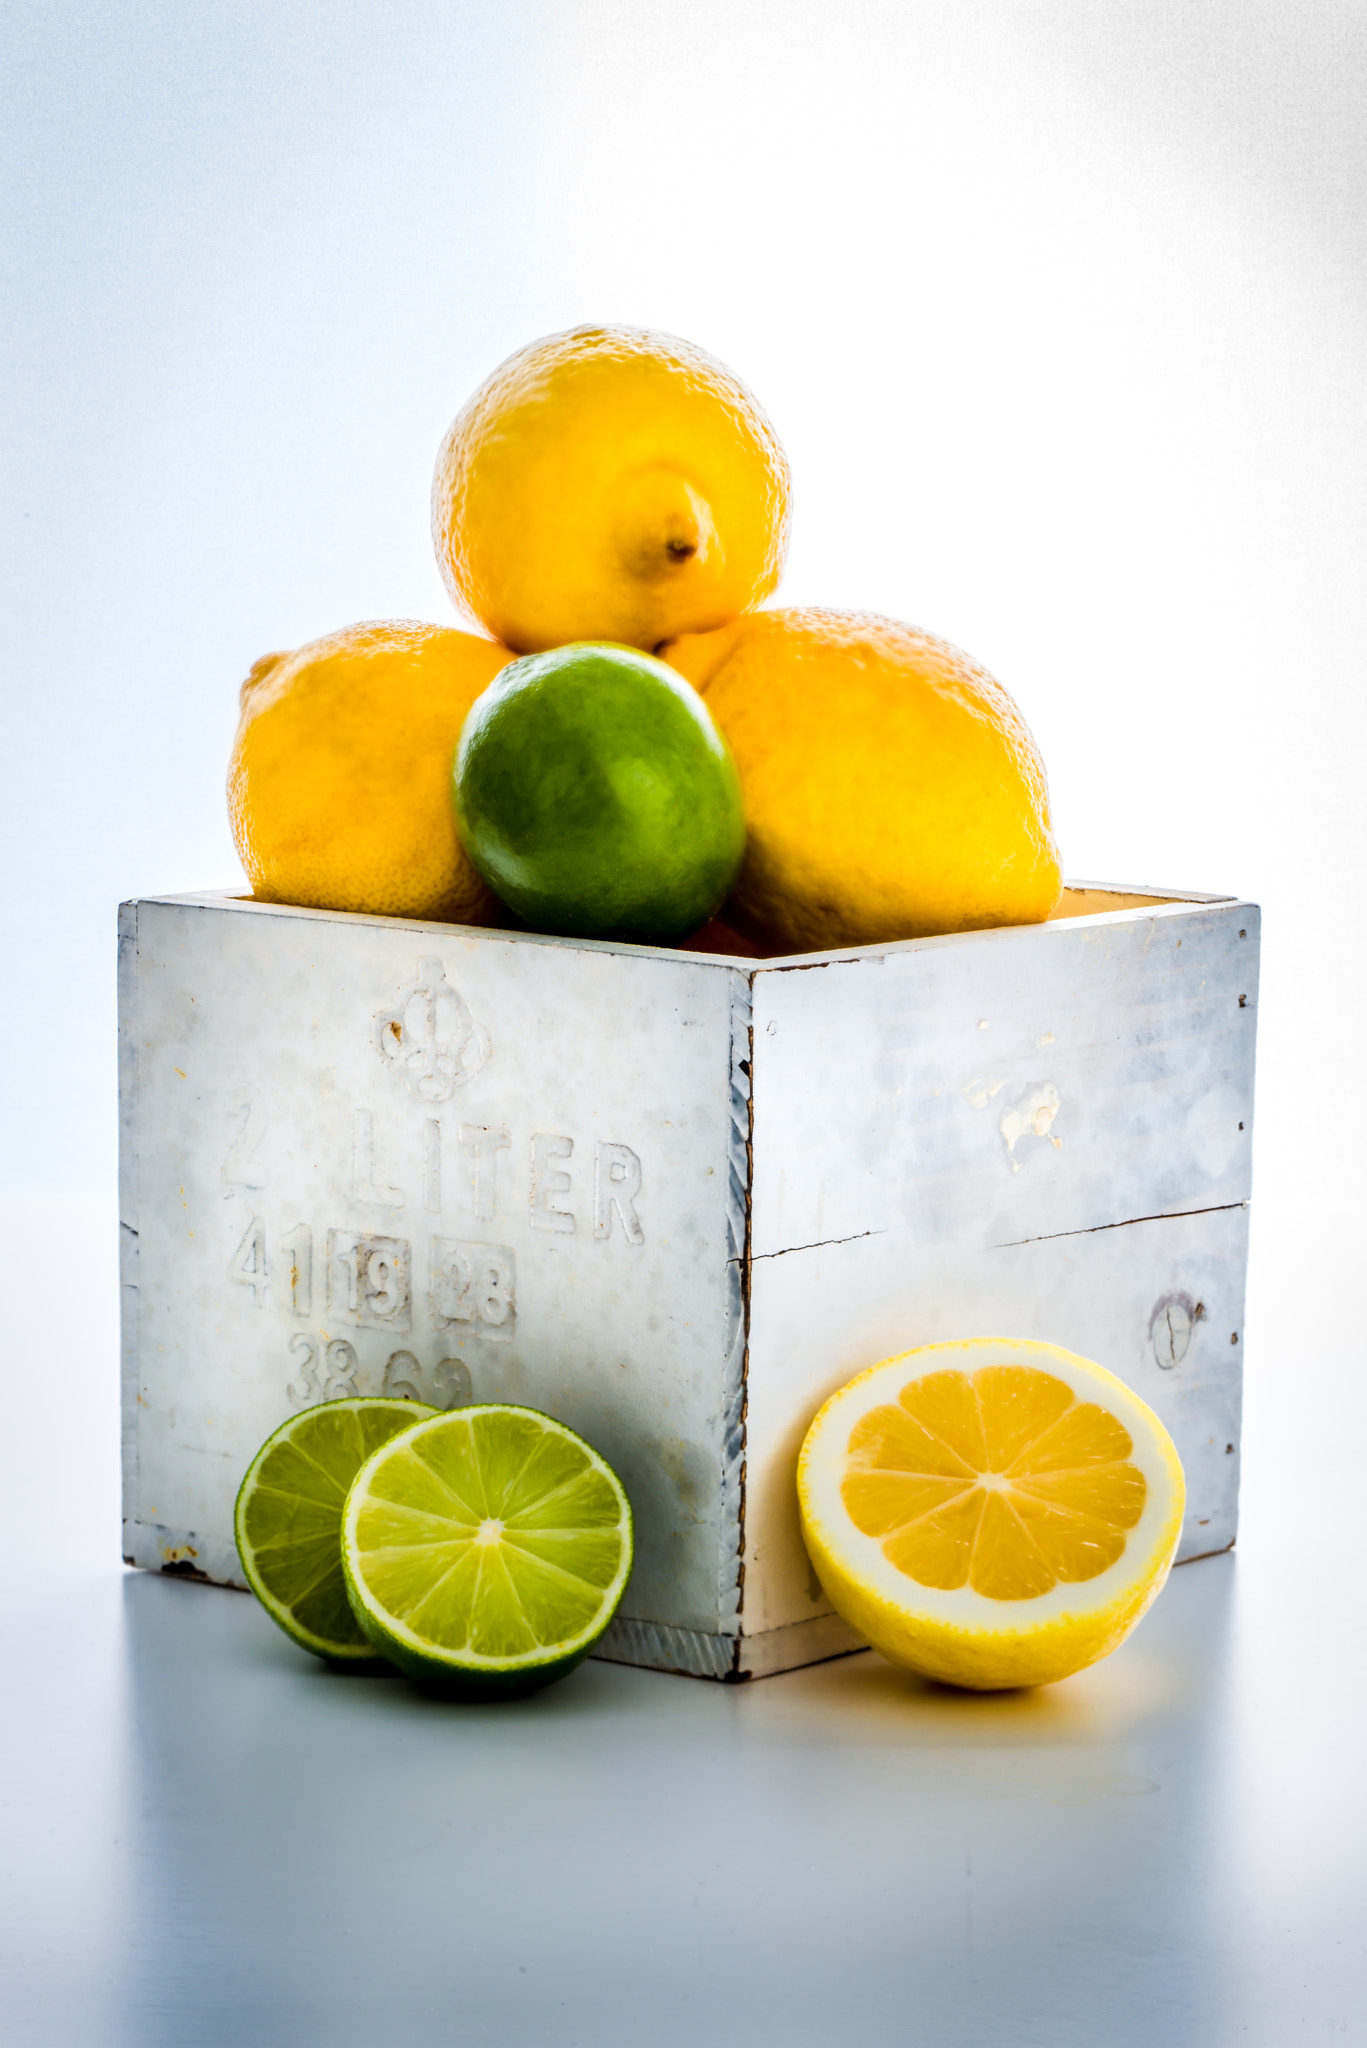 Nikon D800 sample photo. Lemons and limes photography